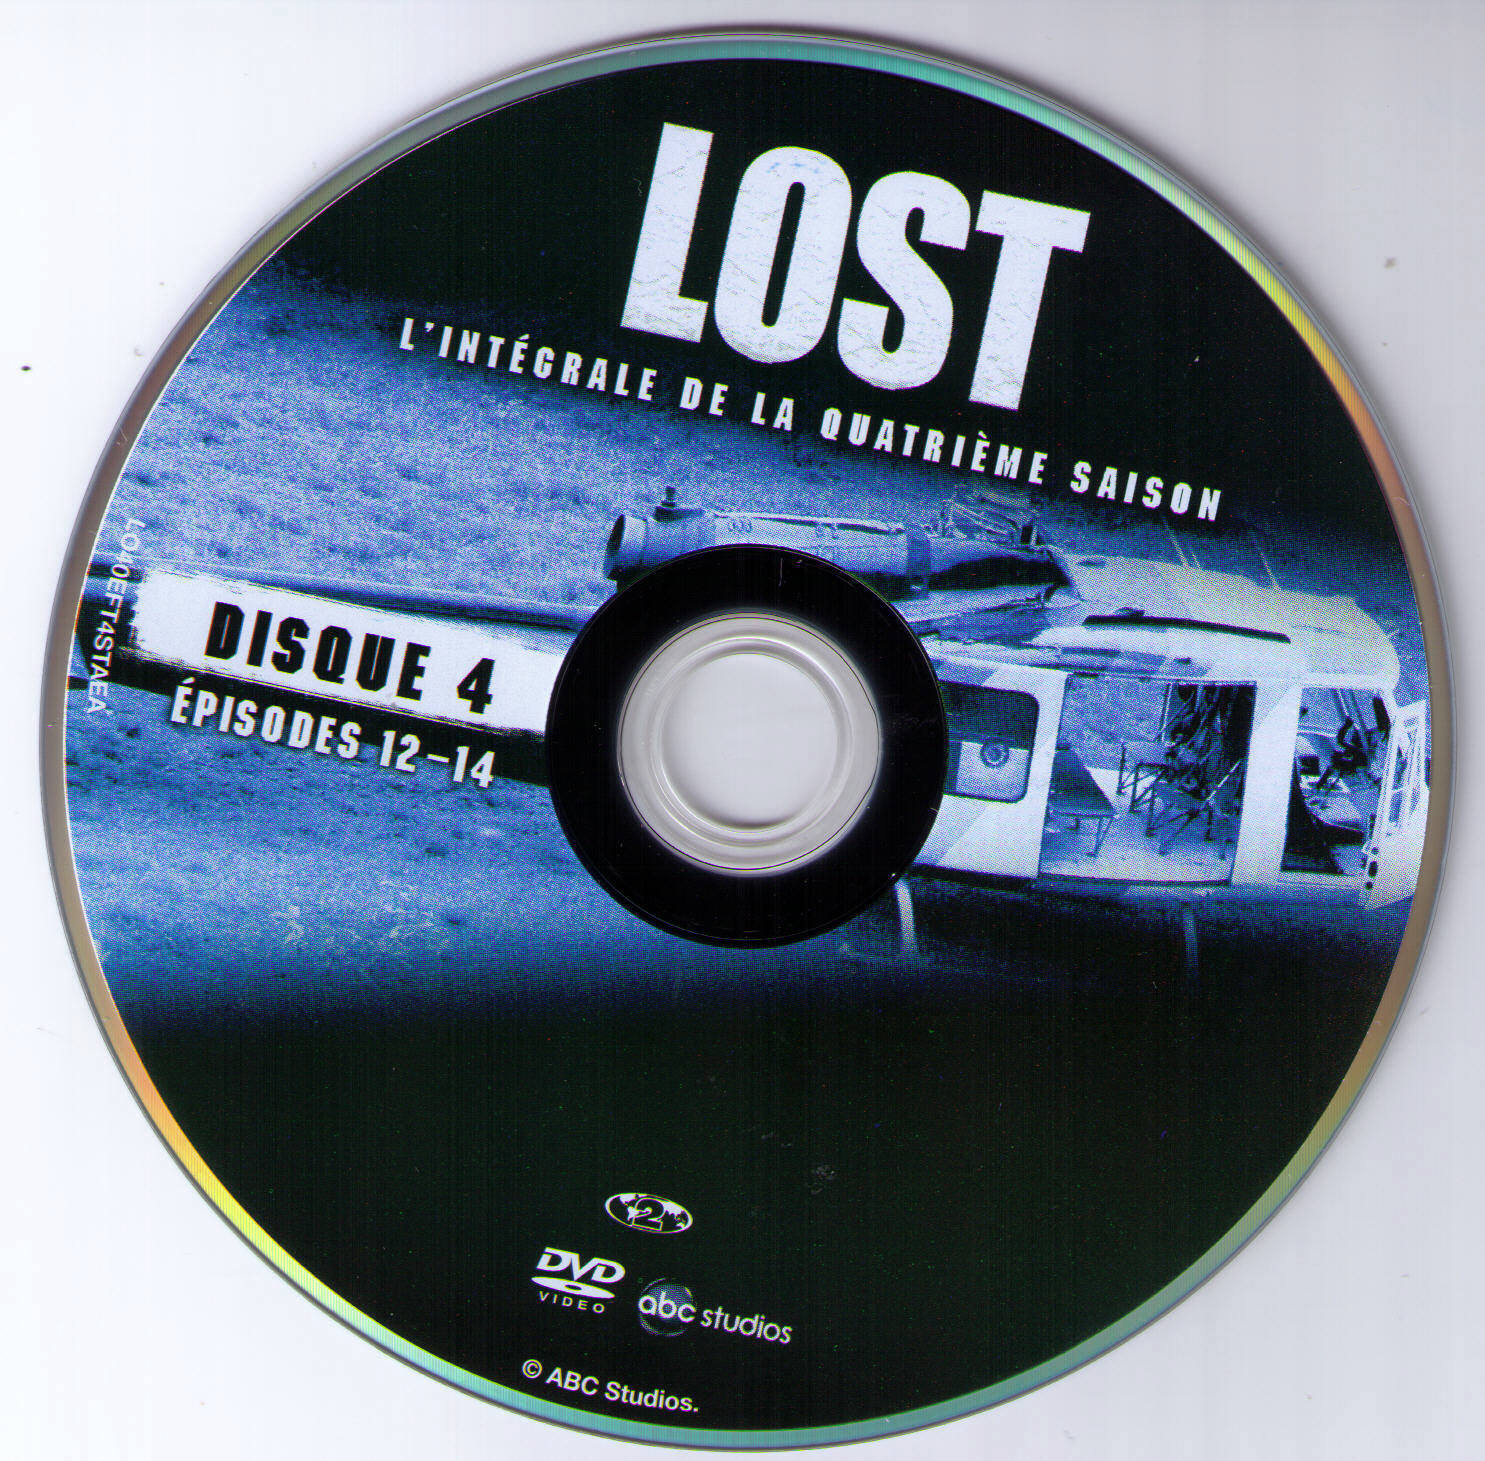 Lost Saison 4 DISC 4